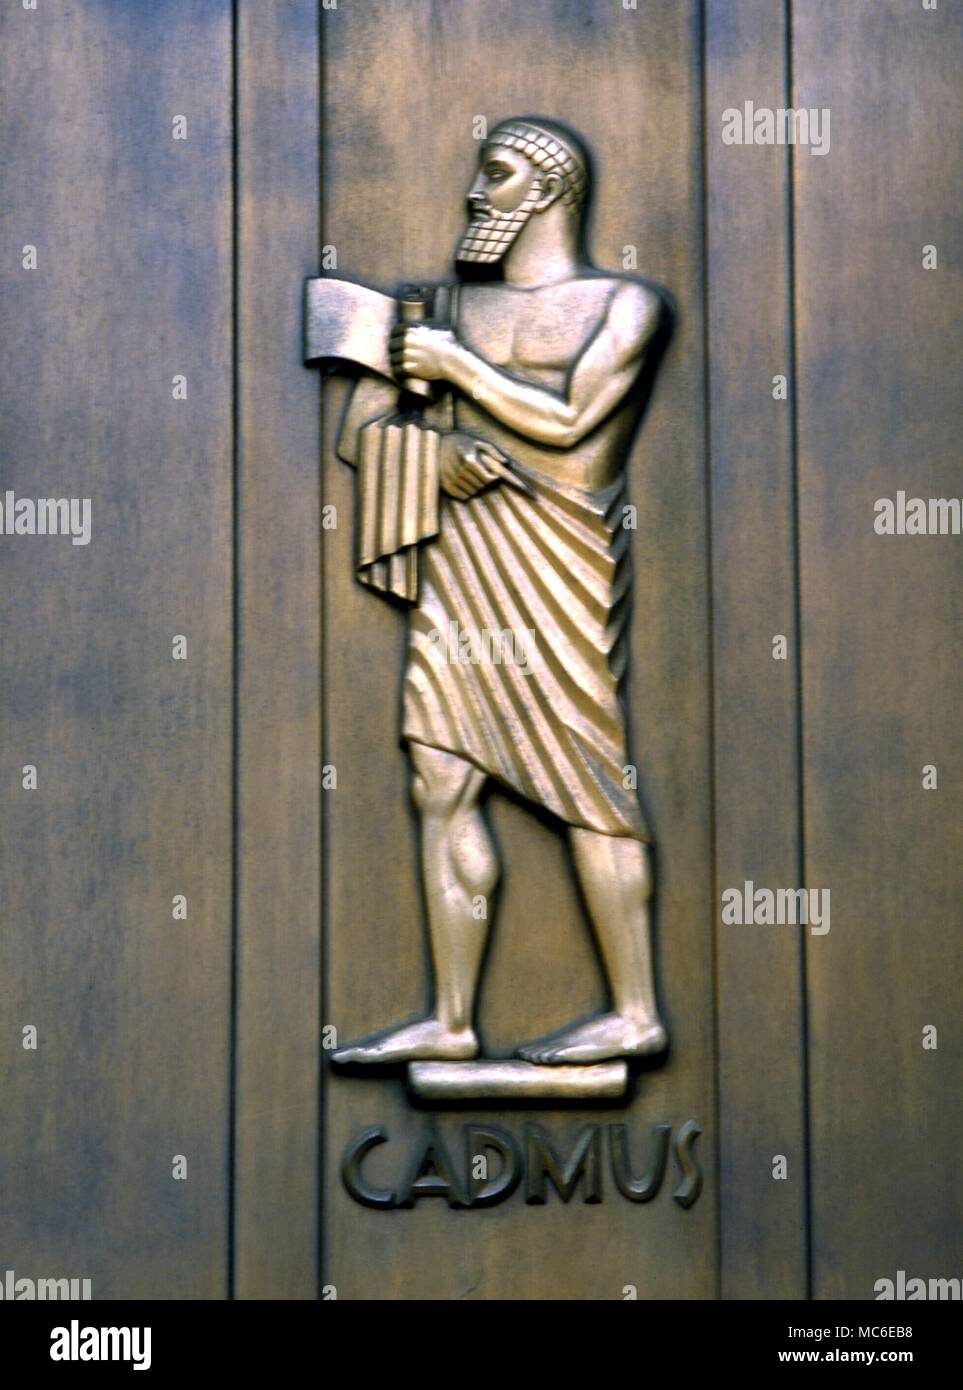 La Mythologie grecque : Cadmos Cadmos, le héros le roi dont il est dit qu'il a introduit en Europe à partir de la Phénicie un alphabet de 16 lettres. Il fut finalement transformé en serpent. Banque D'Images